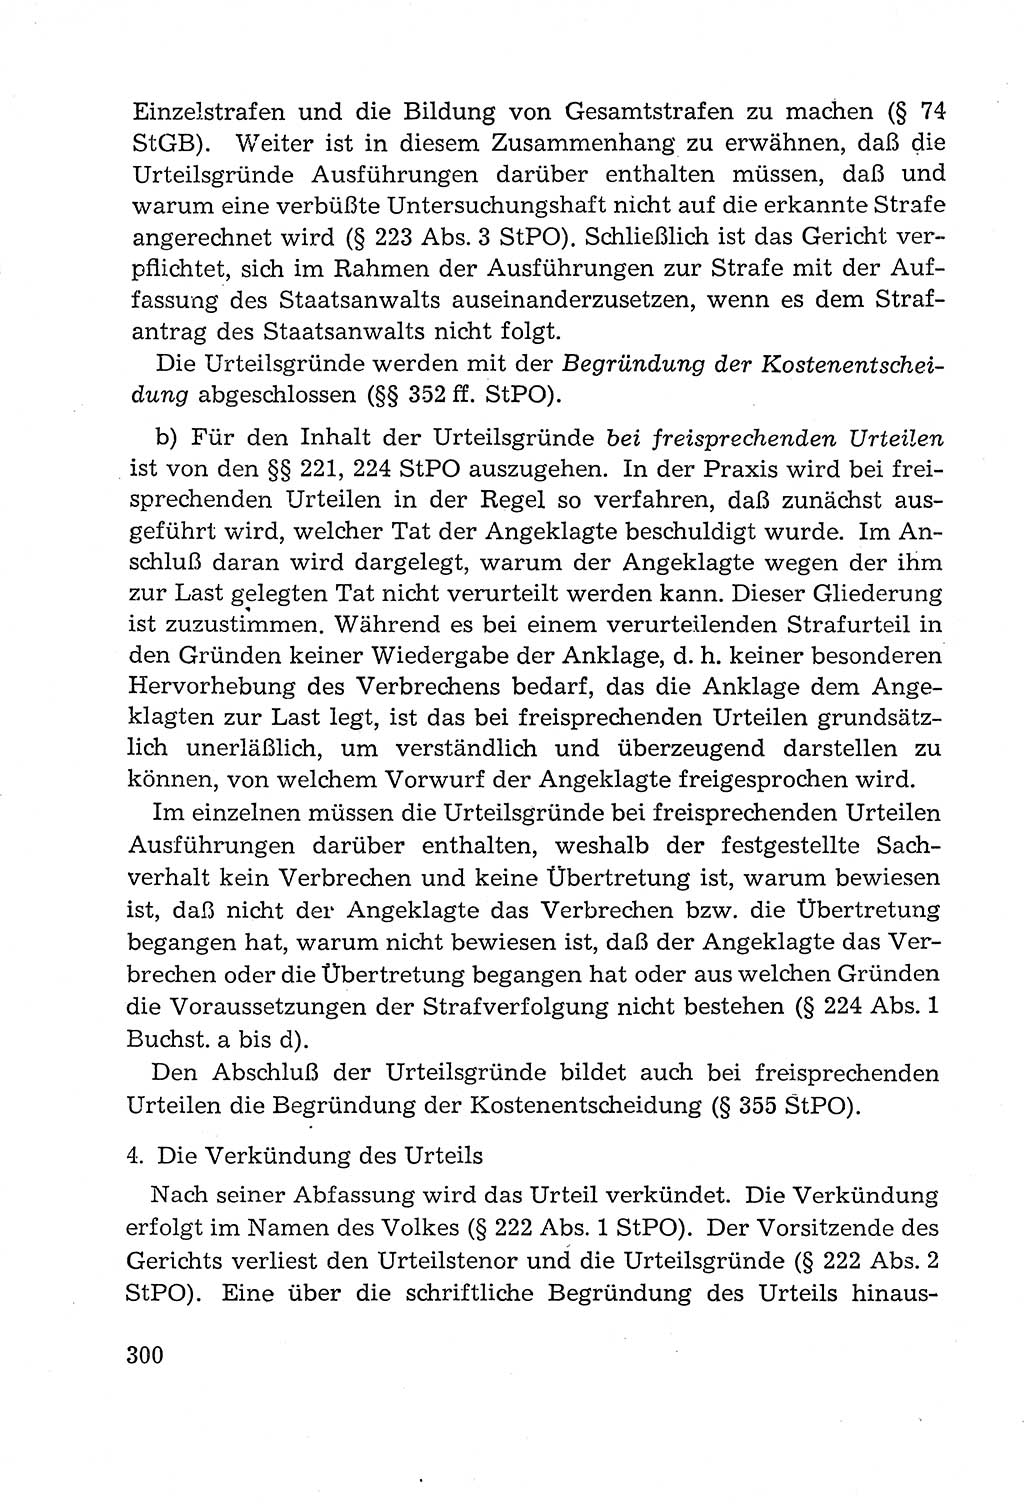 Leitfaden des Strafprozeßrechts der Deutschen Demokratischen Republik (DDR) 1959, Seite 300 (LF StPR DDR 1959, S. 300)